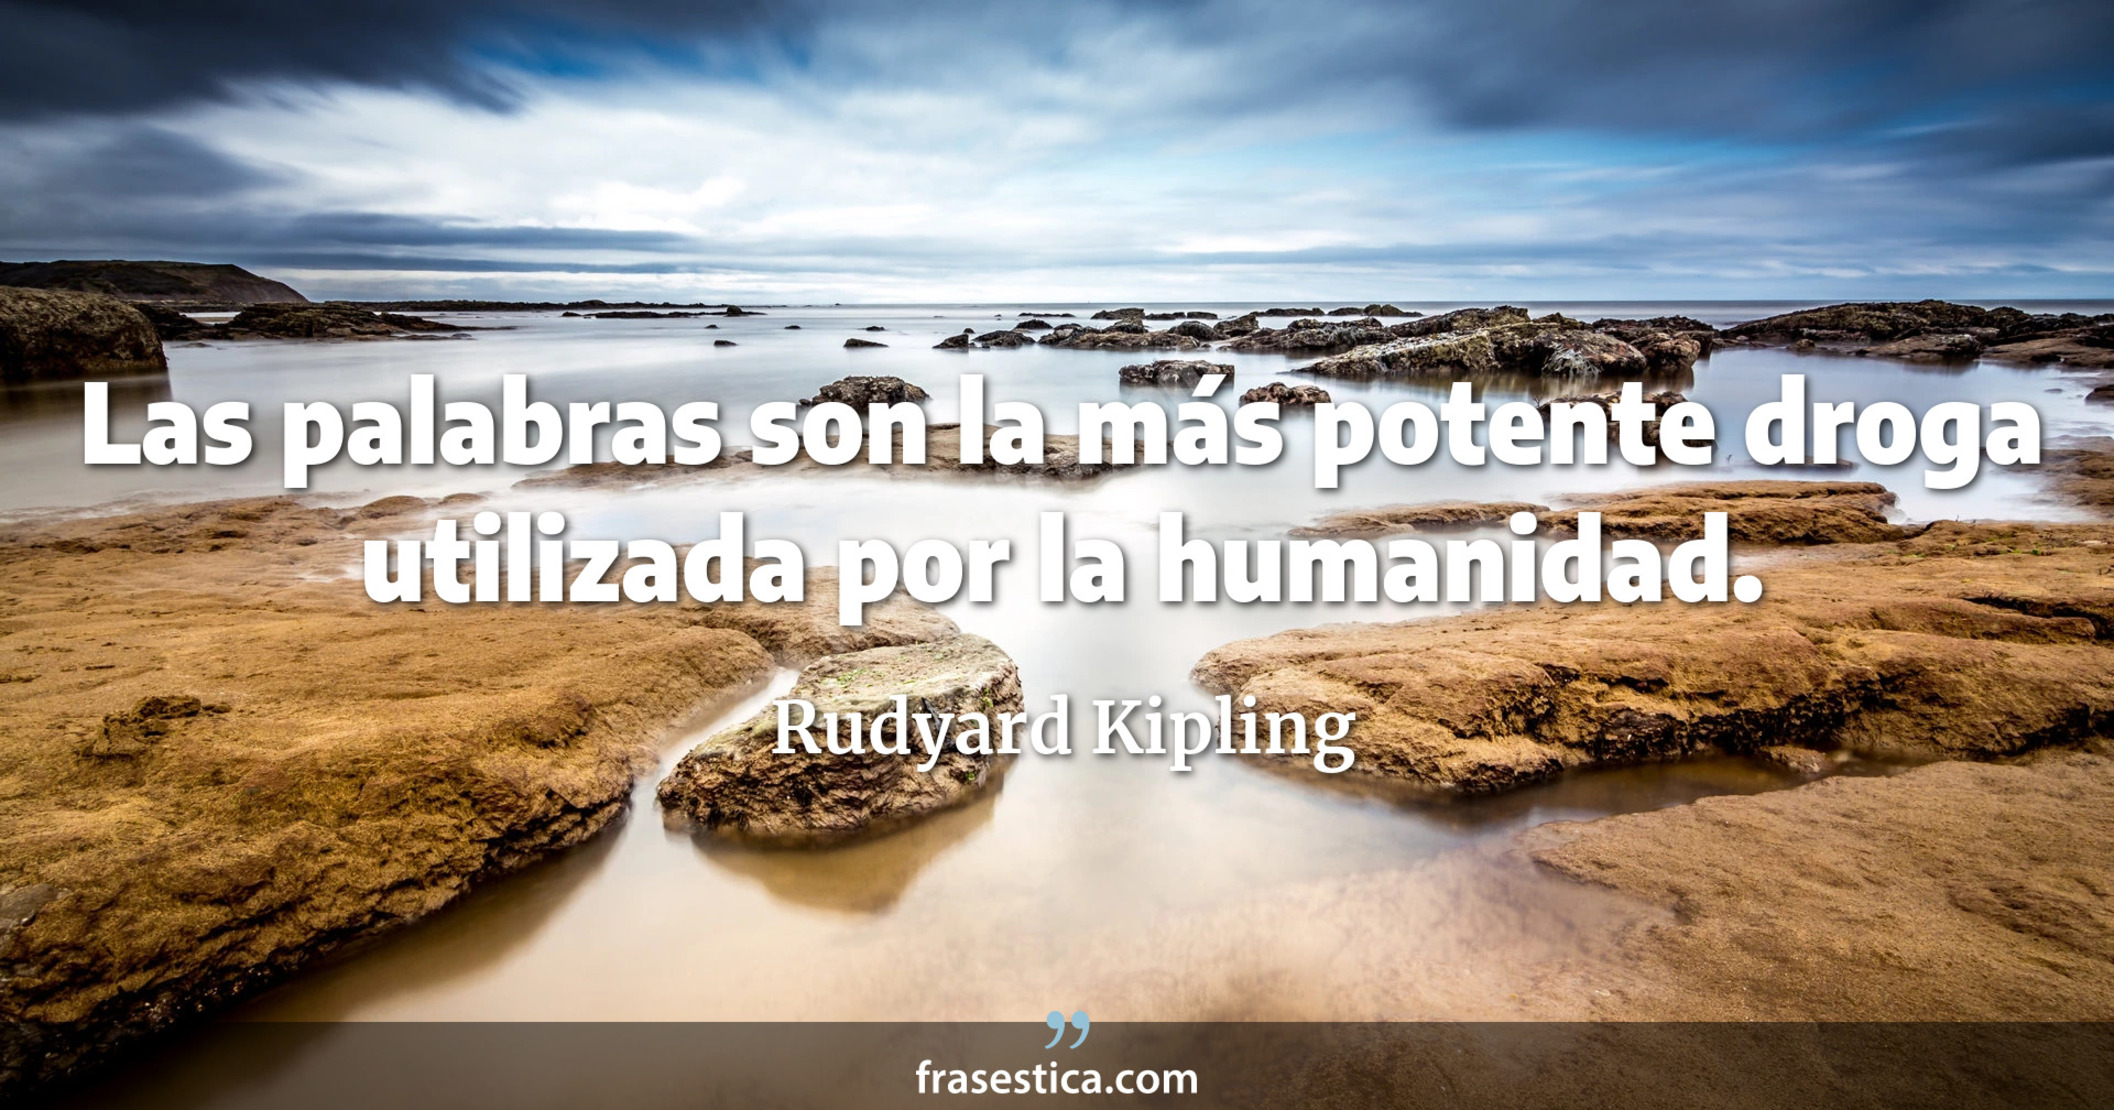 Las palabras son la más potente droga utilizada por la humanidad. - Rudyard Kipling